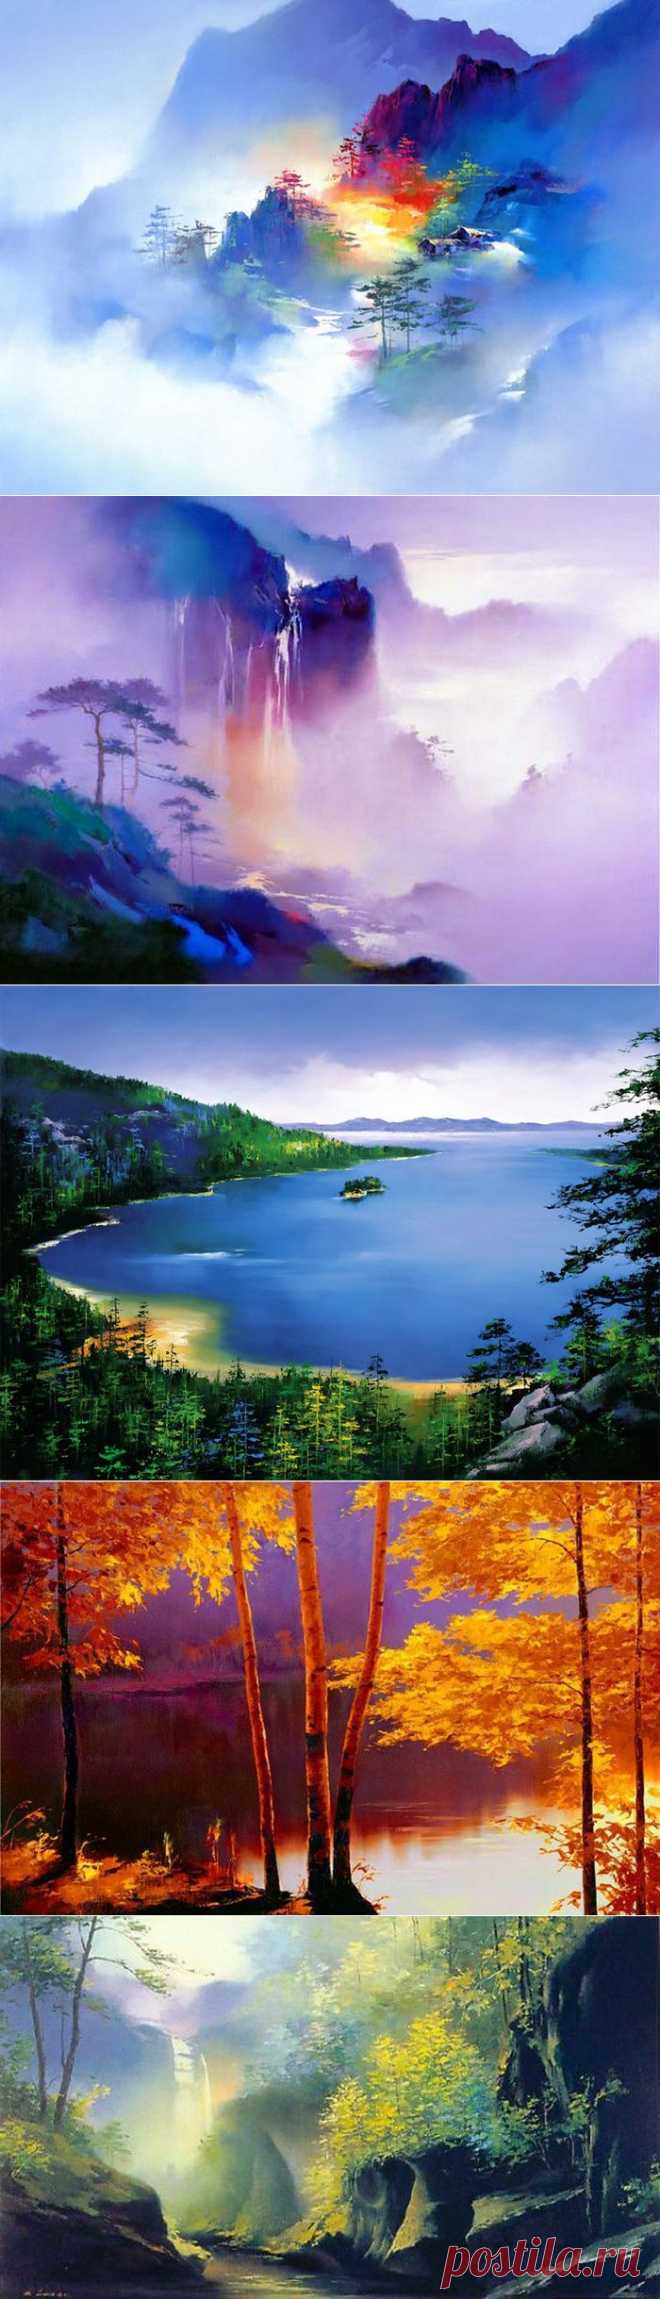 Пейзажи редкой красоты и гармонии от H. Leung | В мире интересного